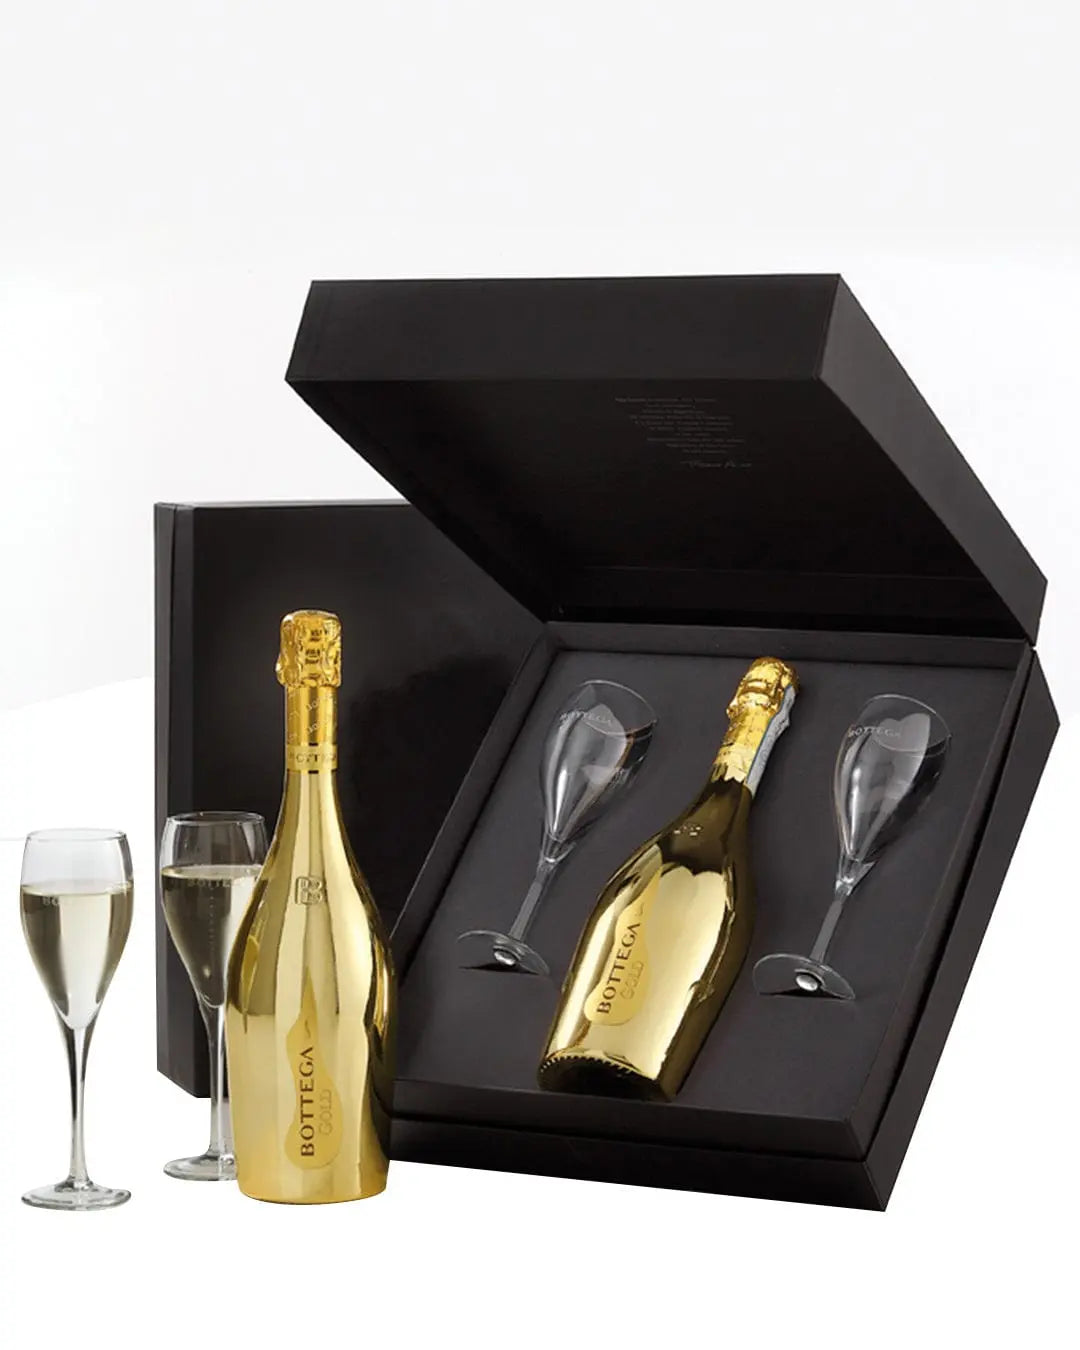 Bottega Confezione Black Gold Gift Set, 75 cl Champagne & Sparkling